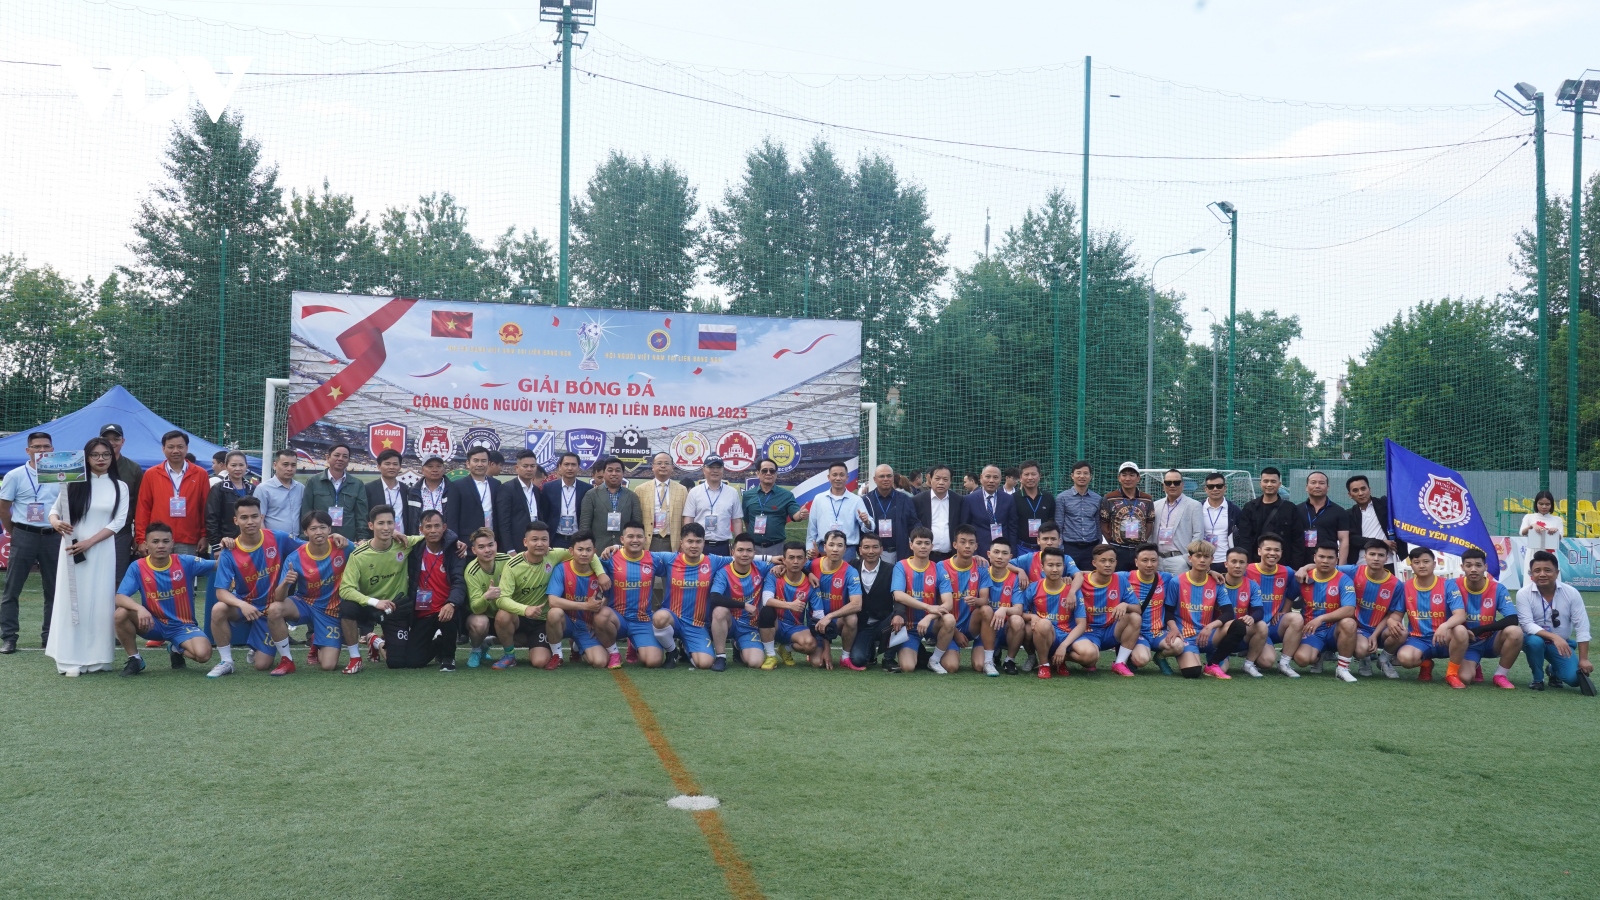 Khai mạc giải bóng đá sôi động nhất của cộng đồng người Việt tại Nga